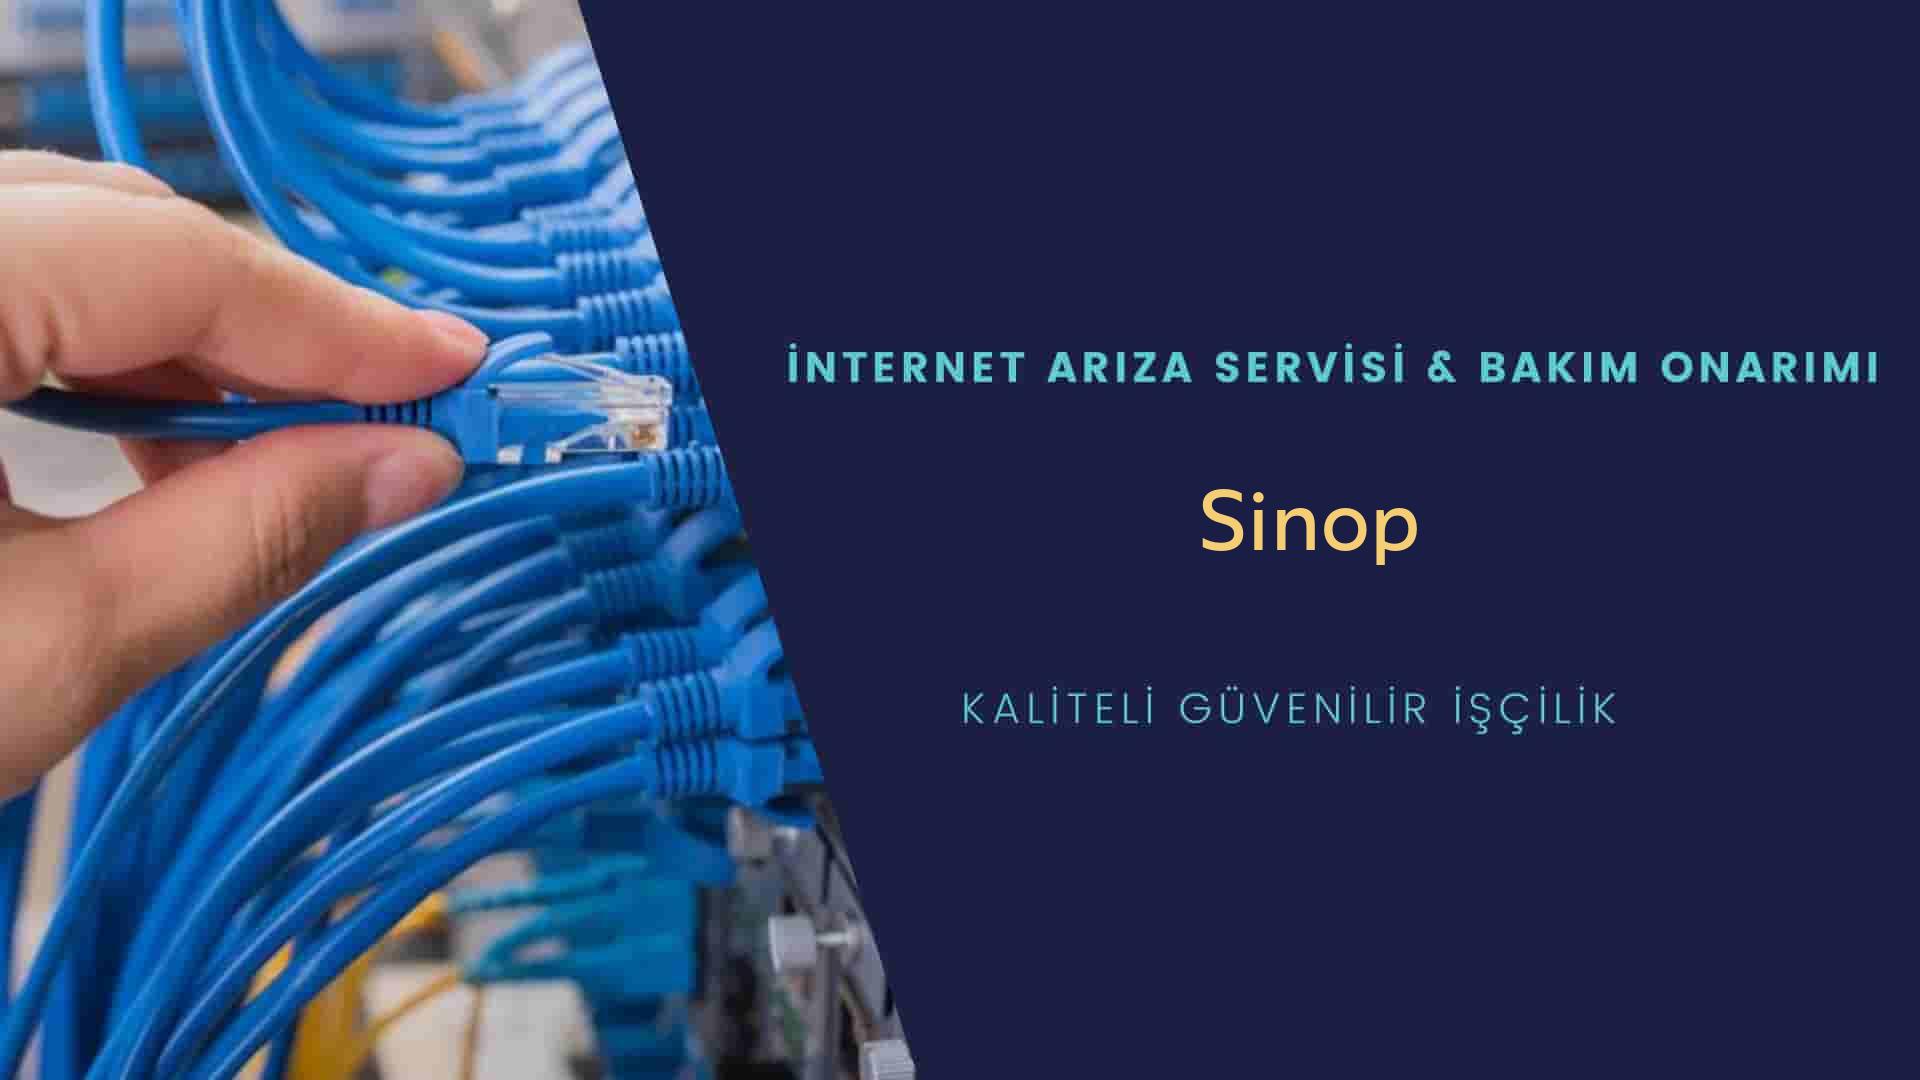 Sinop internet kablosu çekimi yapan yerler veya elektrikçiler mi? arıyorsunuz doğru yerdesiniz o zaman sizlere 7/24 yardımcı olacak profesyonel ustalarımız bir telefon kadar yakındır size.